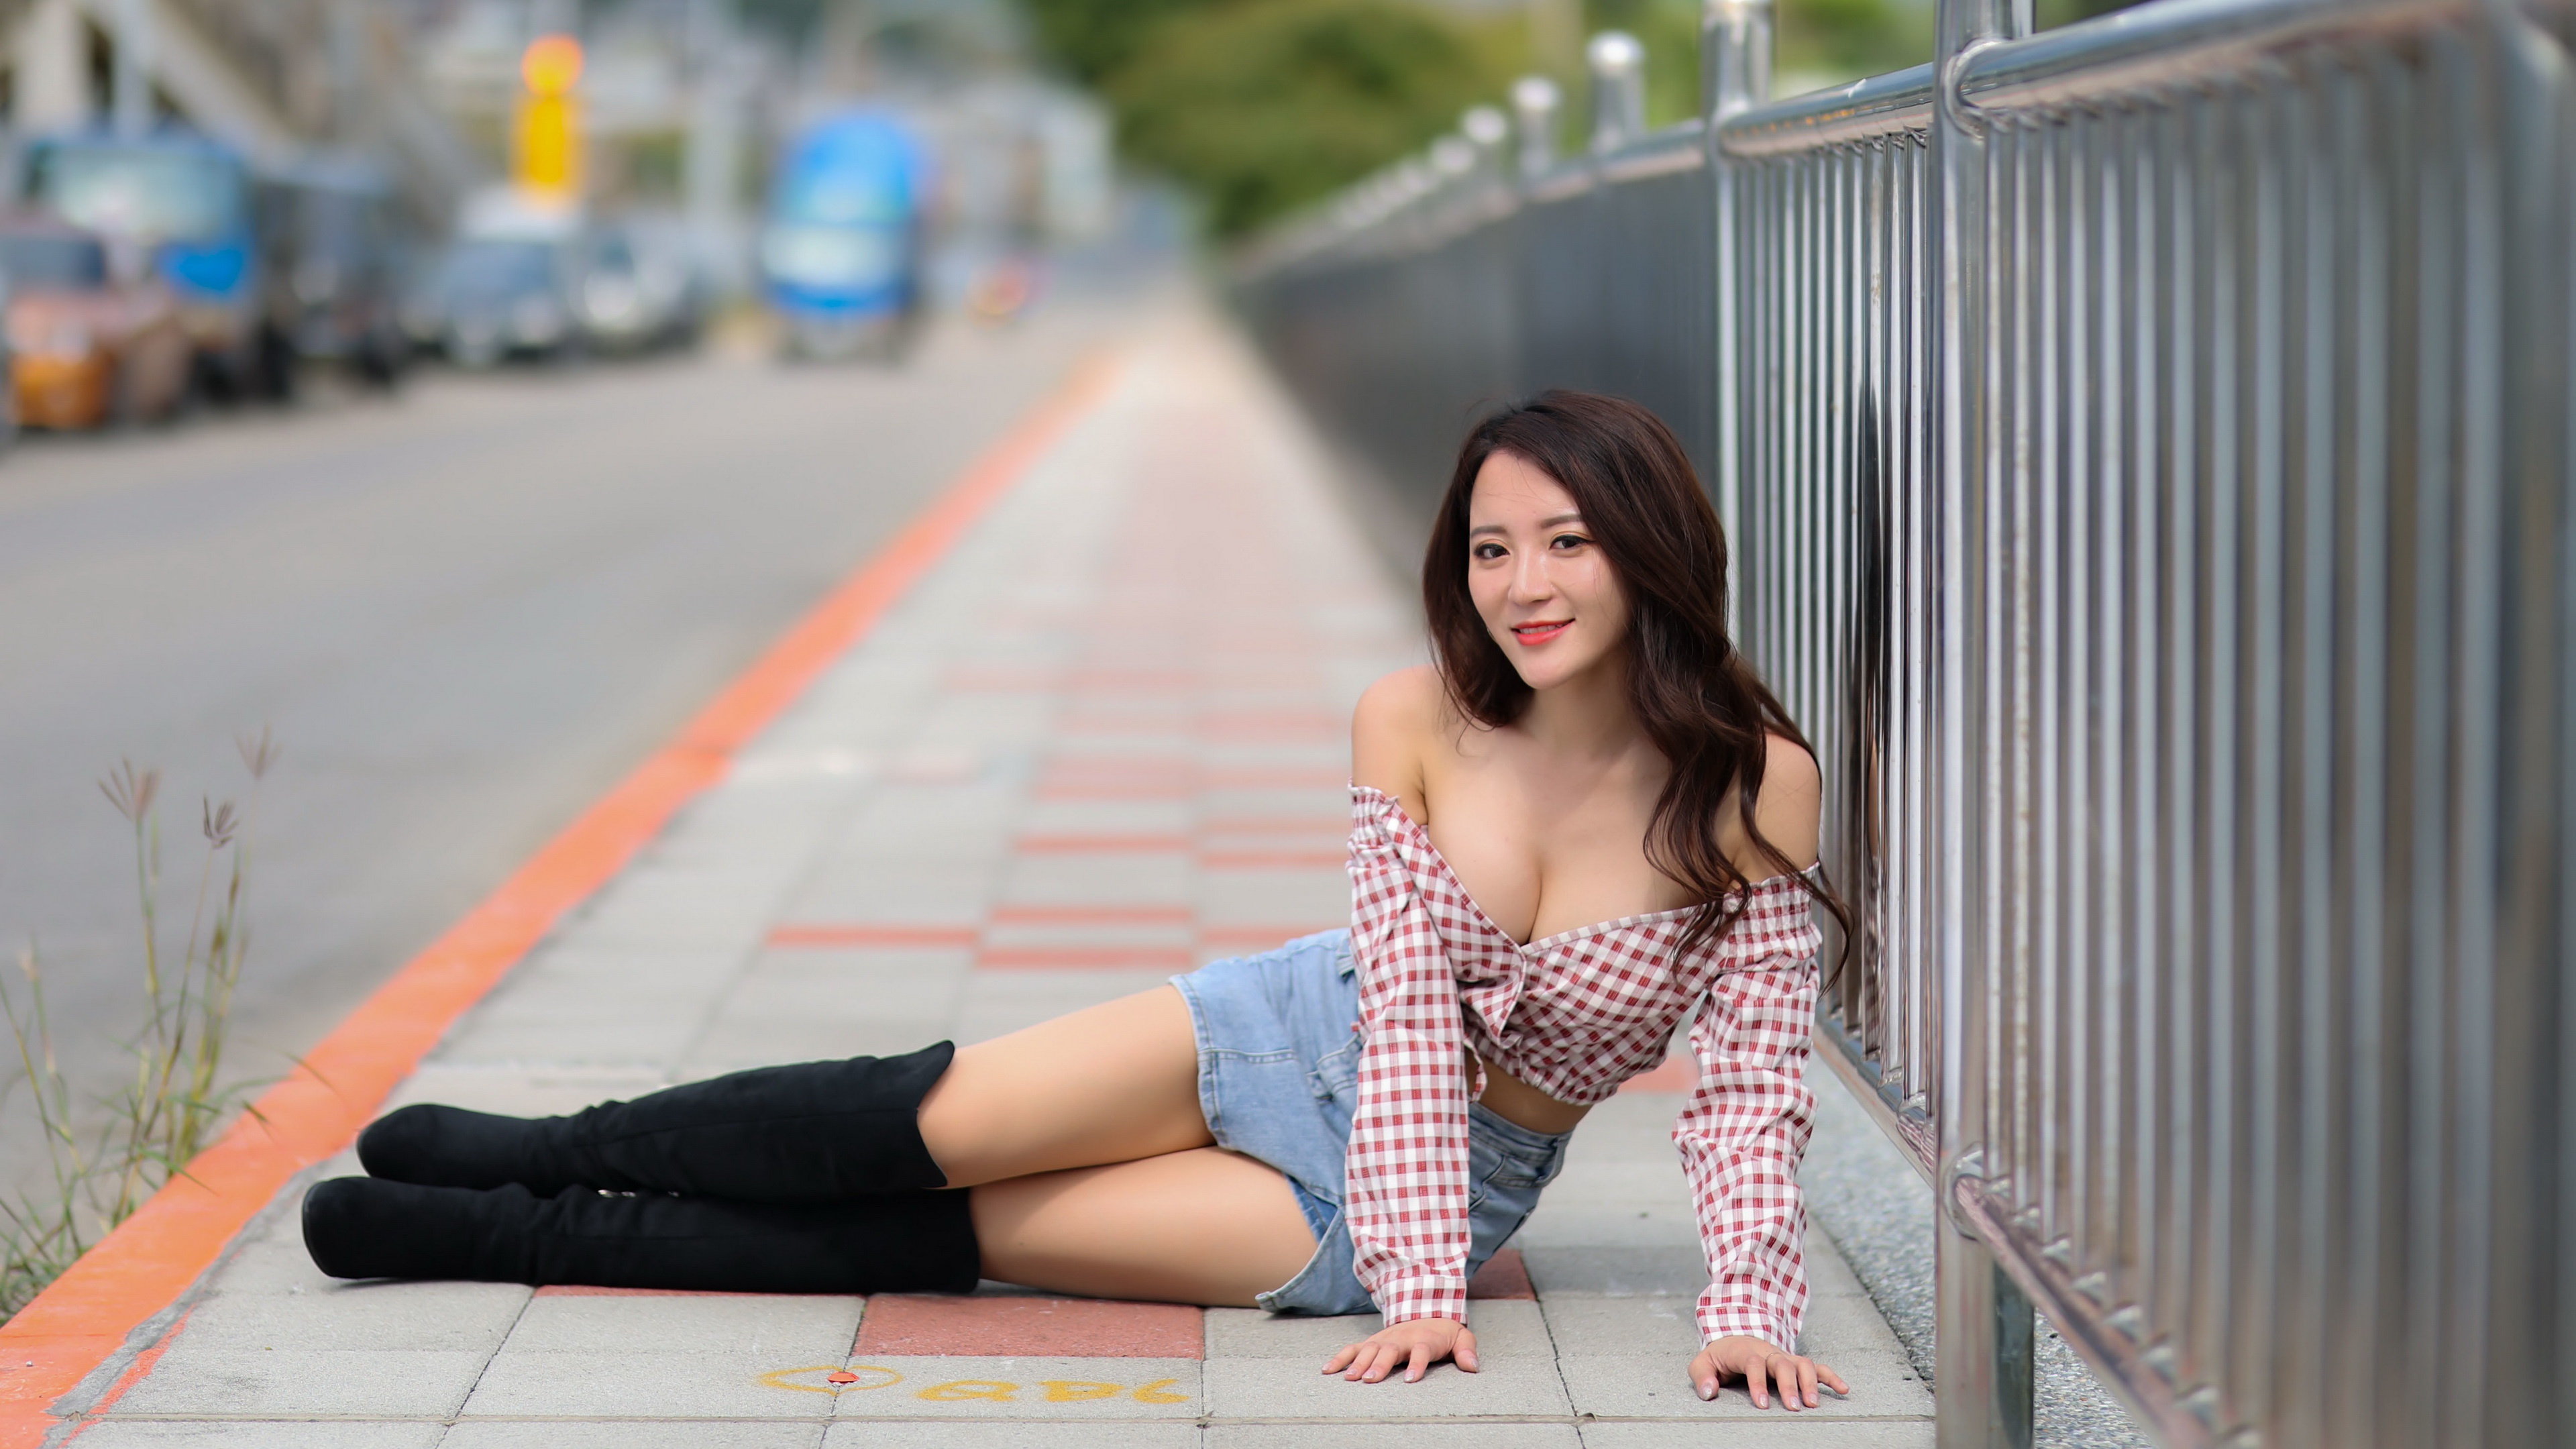 Asian Women Model Urban Boots Brunette Long Hair Plaid Shirt Shirt Skirt Looking At Viewer 3840x2160